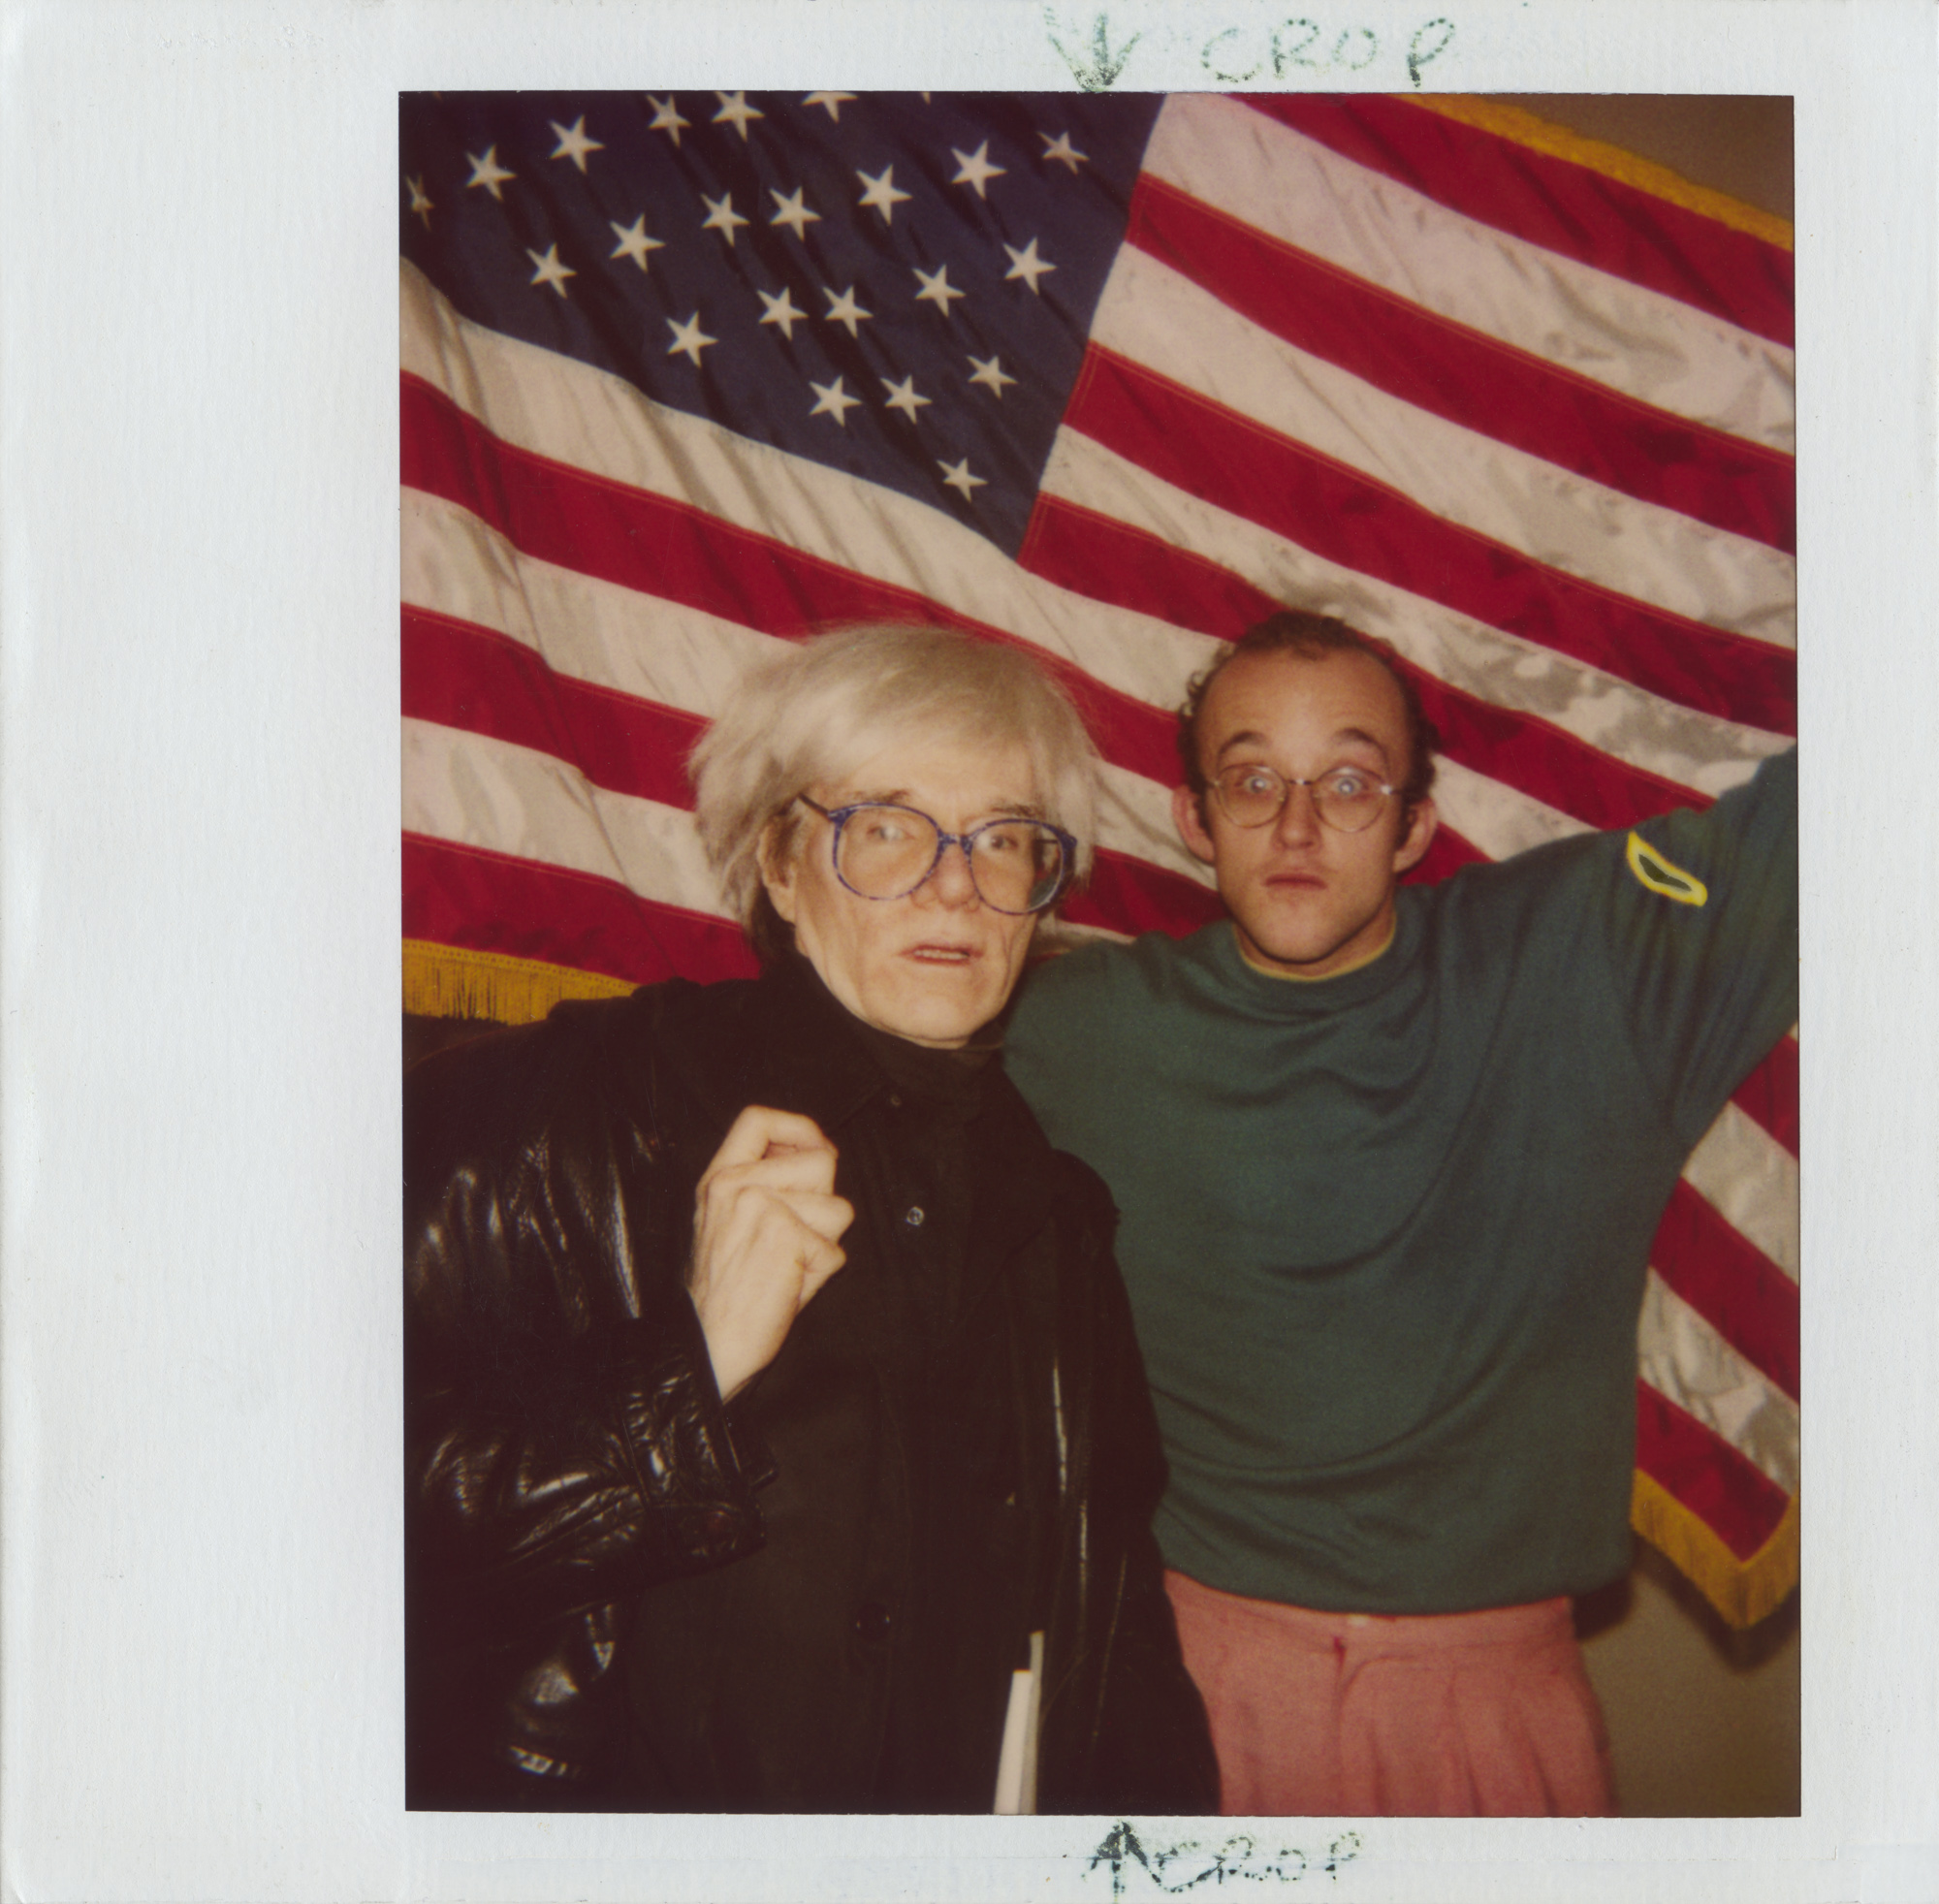  Andy Warhol and Keith Haring. 